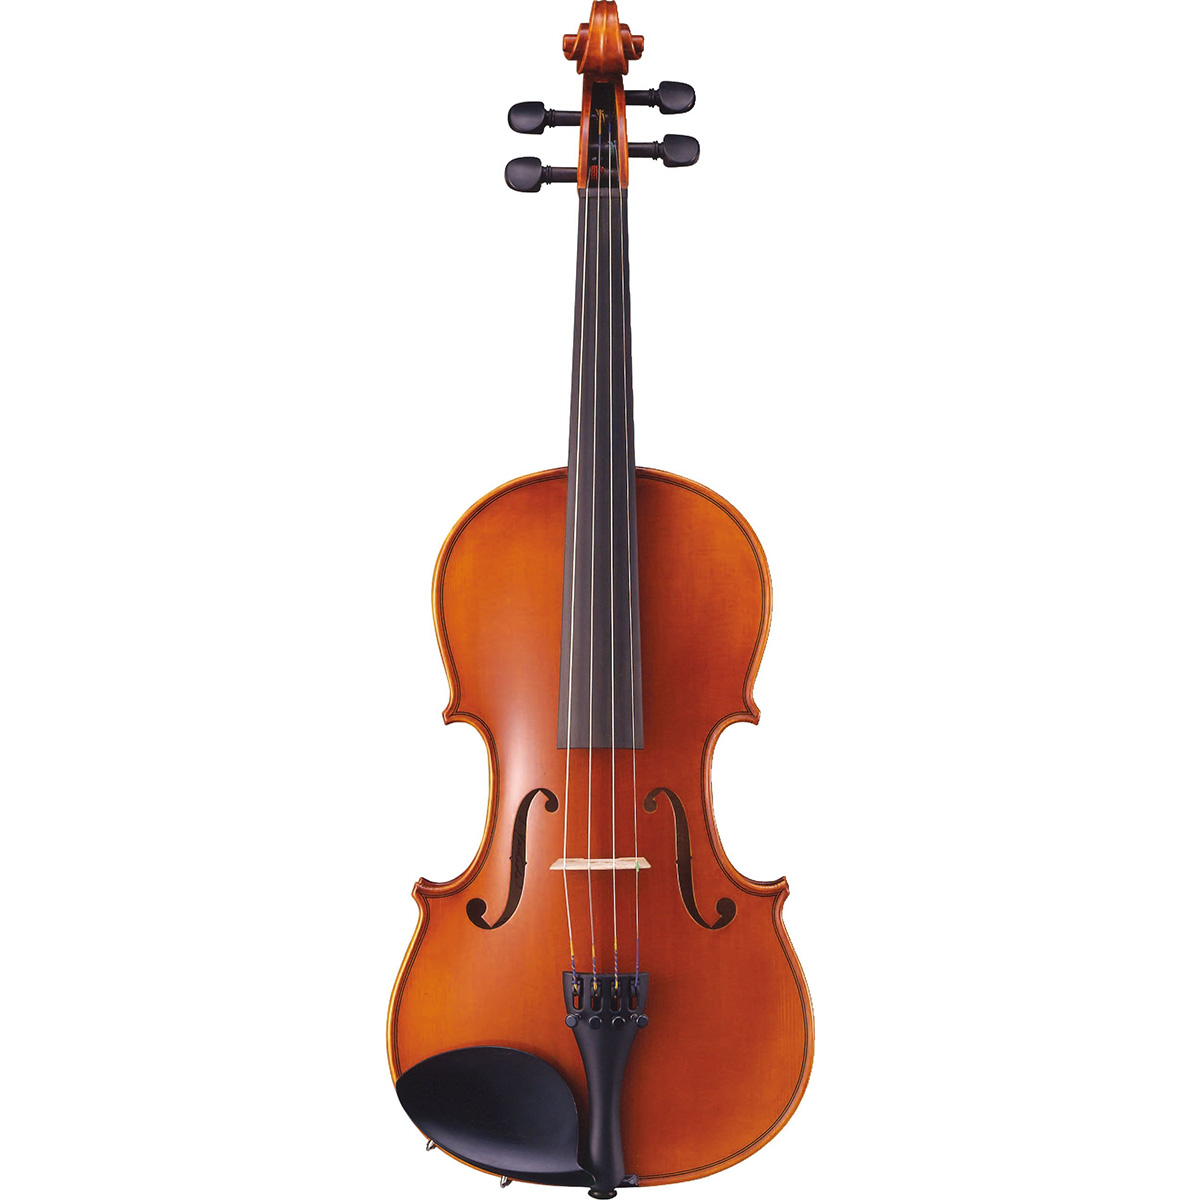 YAMAHA Braviol V7SG 4/4 バイオリンセット ブラビオール ヤマハ